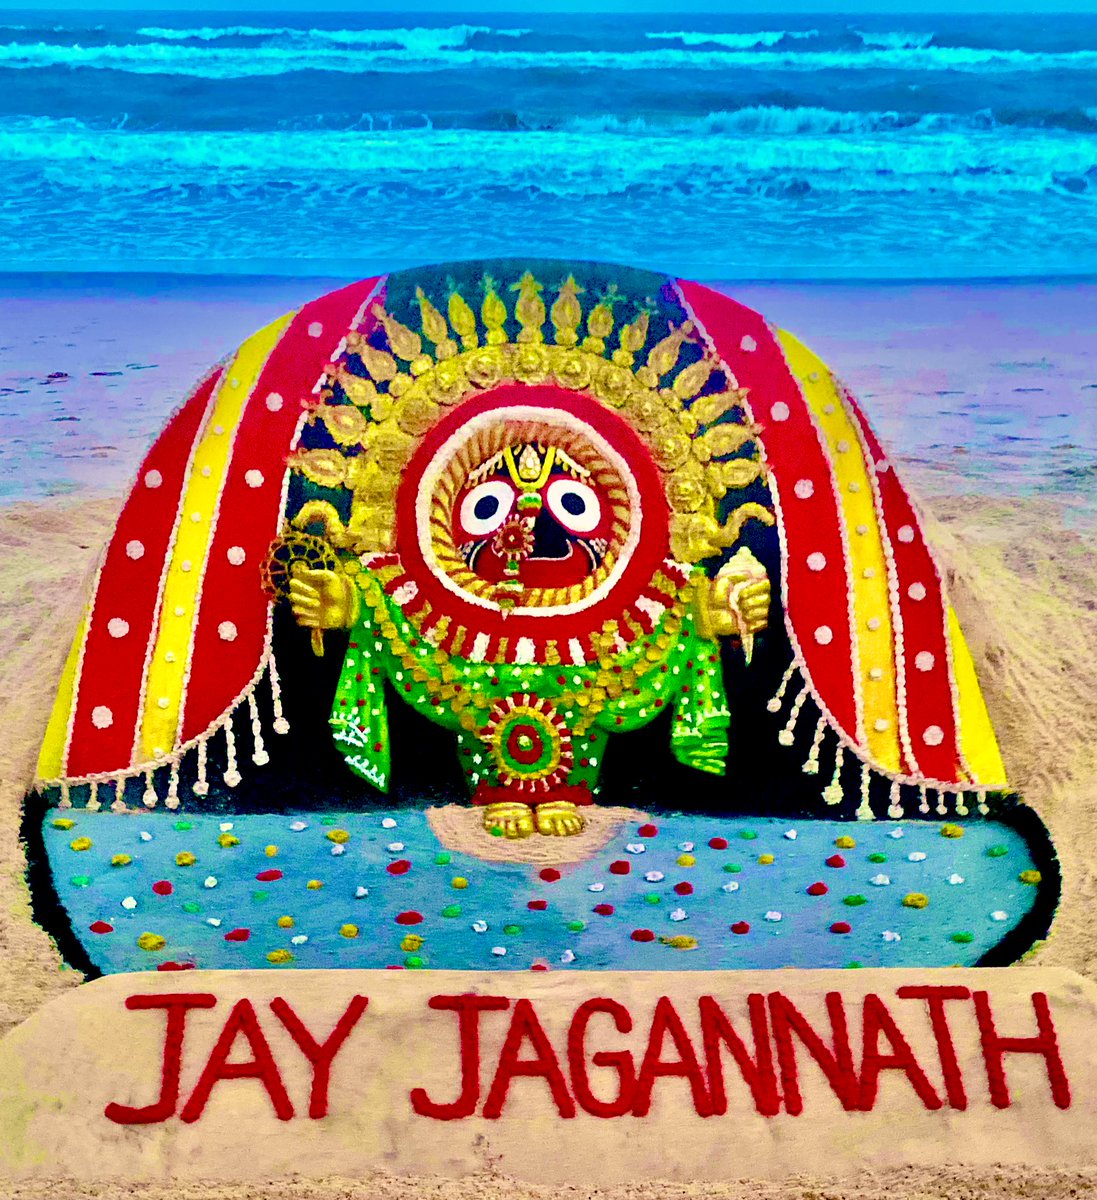 ମହାପ୍ରଭୁ ଶ୍ରୀଜଗନ୍ନାଥଂକ ସୁନାବେଶ ଶୁଭ ଅବସରରେ ଜଗତ କଲ୍ୟାଣ ପାଇଁ ପ୍ରାର୍ଥନା । My sand art on #Sunabesha of Lord Jagannath at Puri beach. May Mahaprabhu bless all. #RathaJatra2021